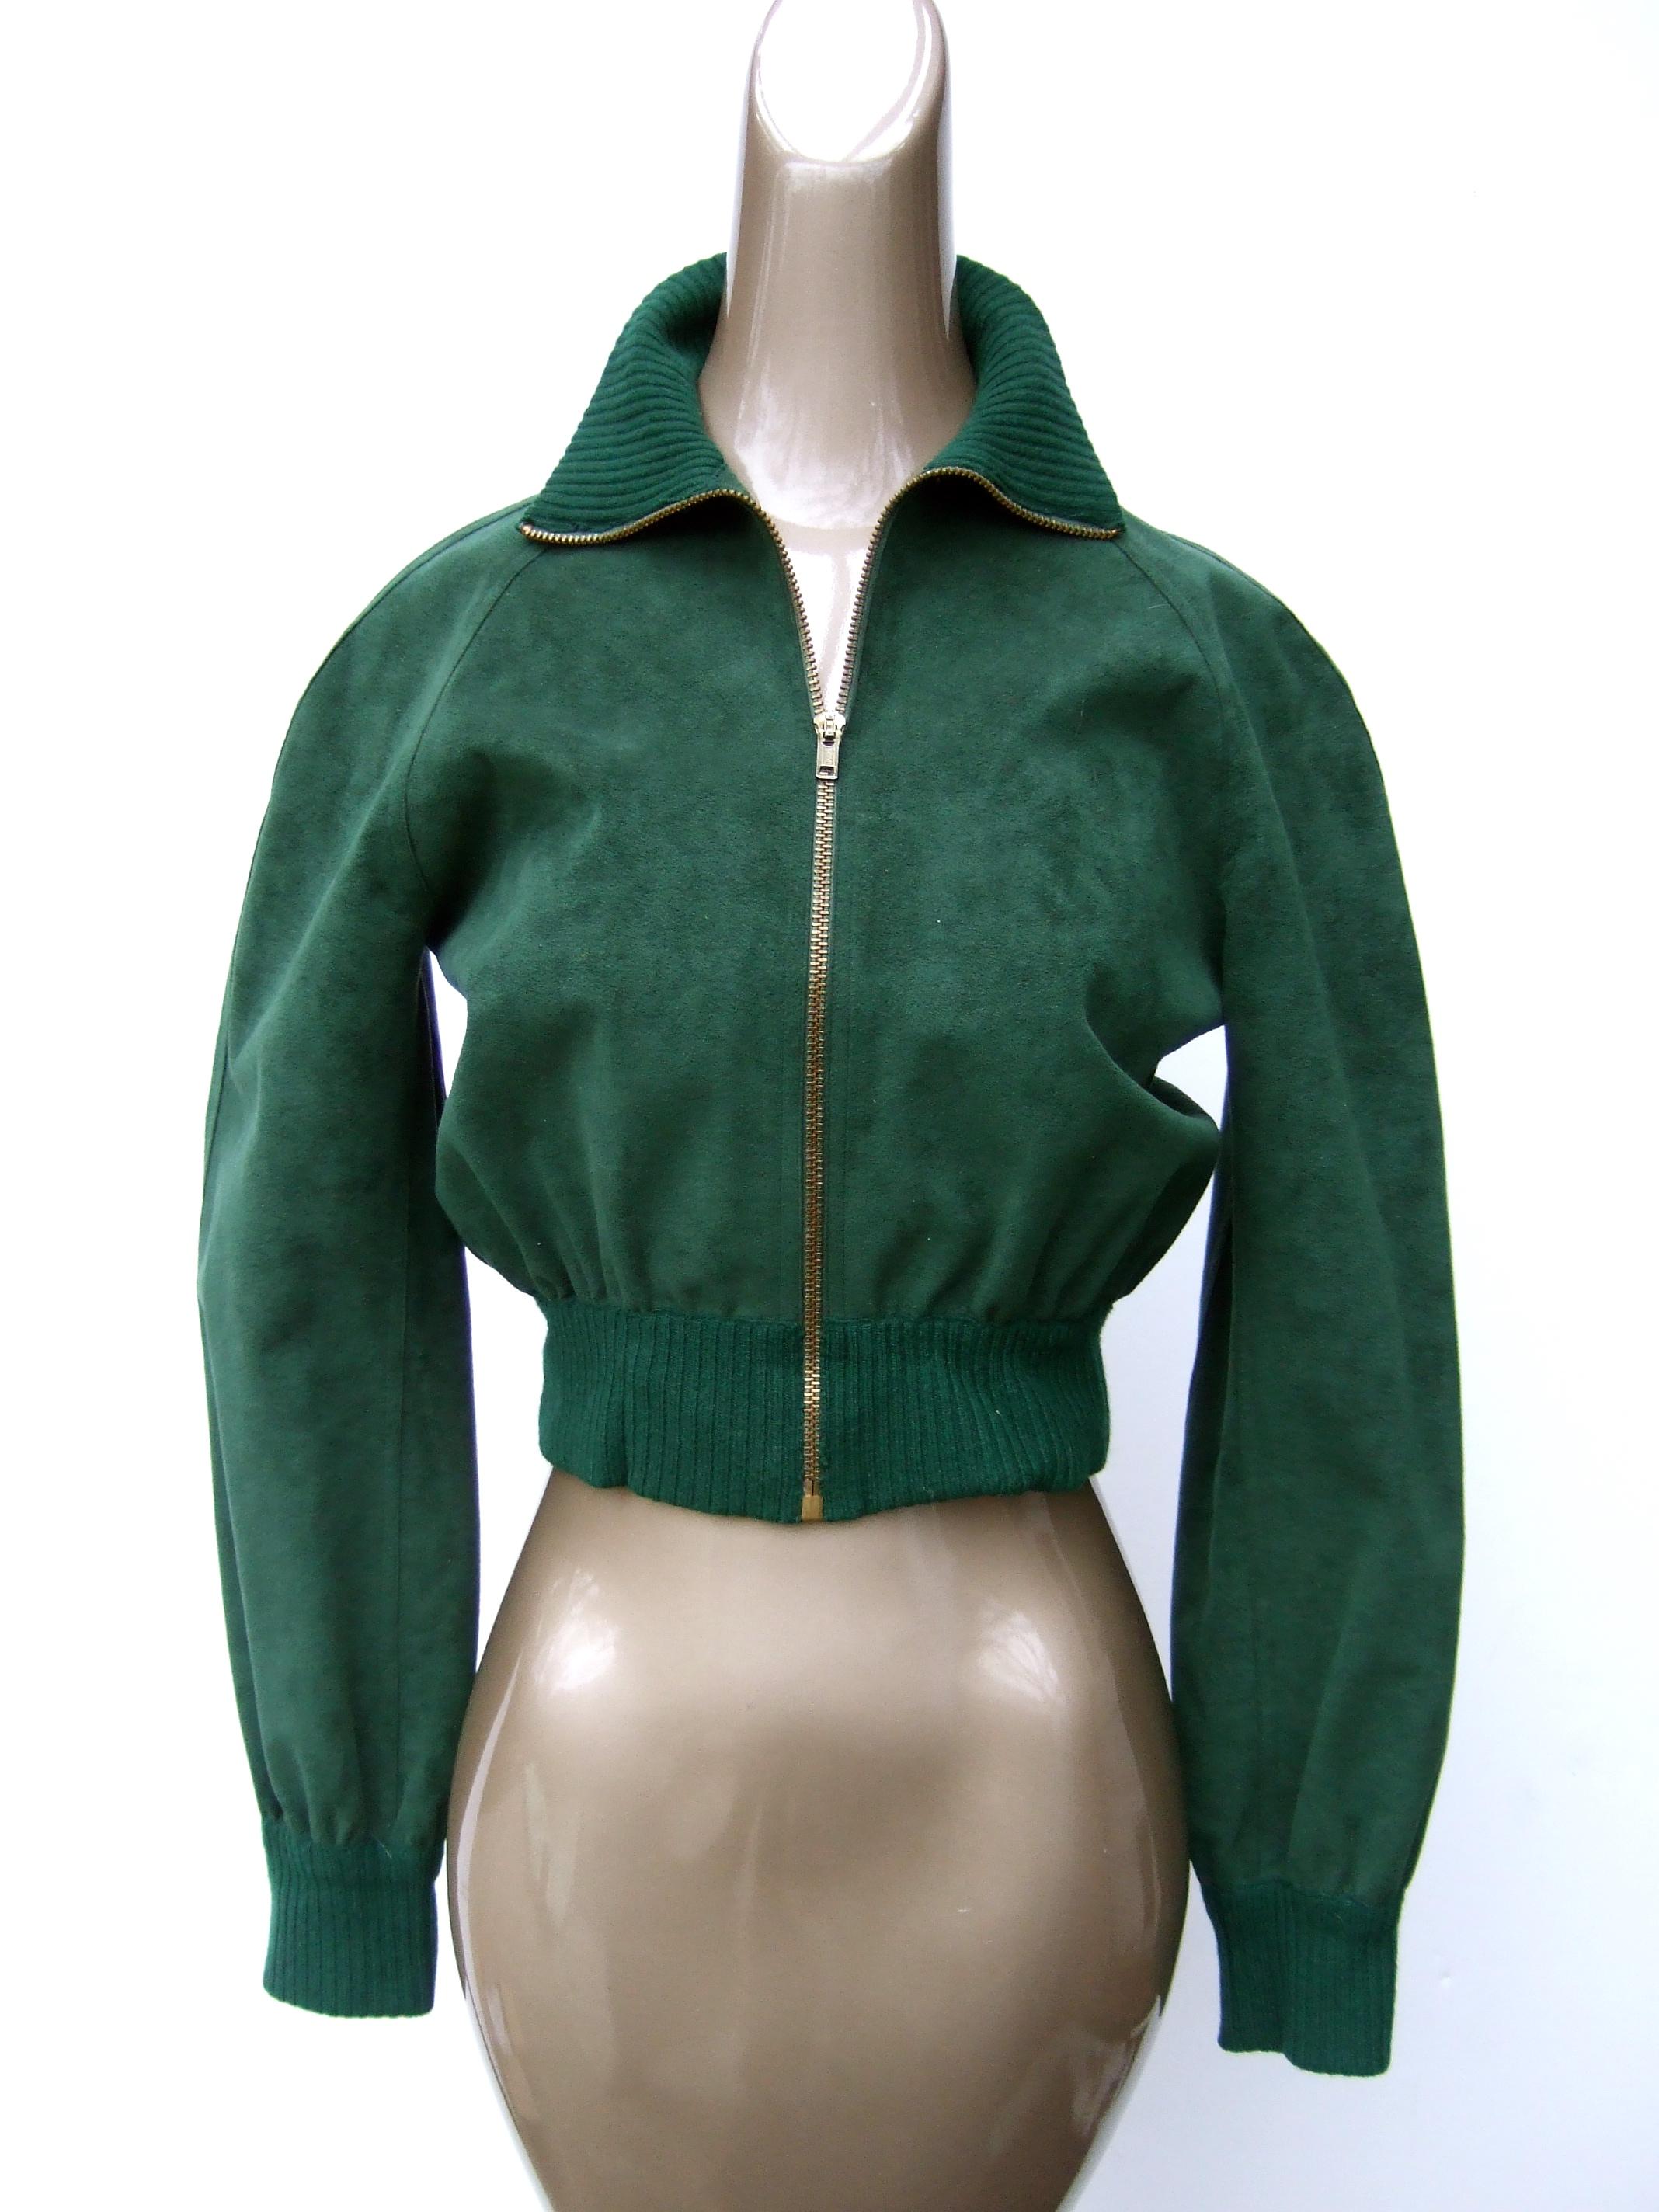 Halston Iconic ultra - veste à fermeture éclair en faux daim style bombardier c 1970 Petite Taille
Cette élégante veste courte à fermeture éclair de couleur vert chasseur est fabriquée à partir de la technologie Halston.
signature ultra - plume